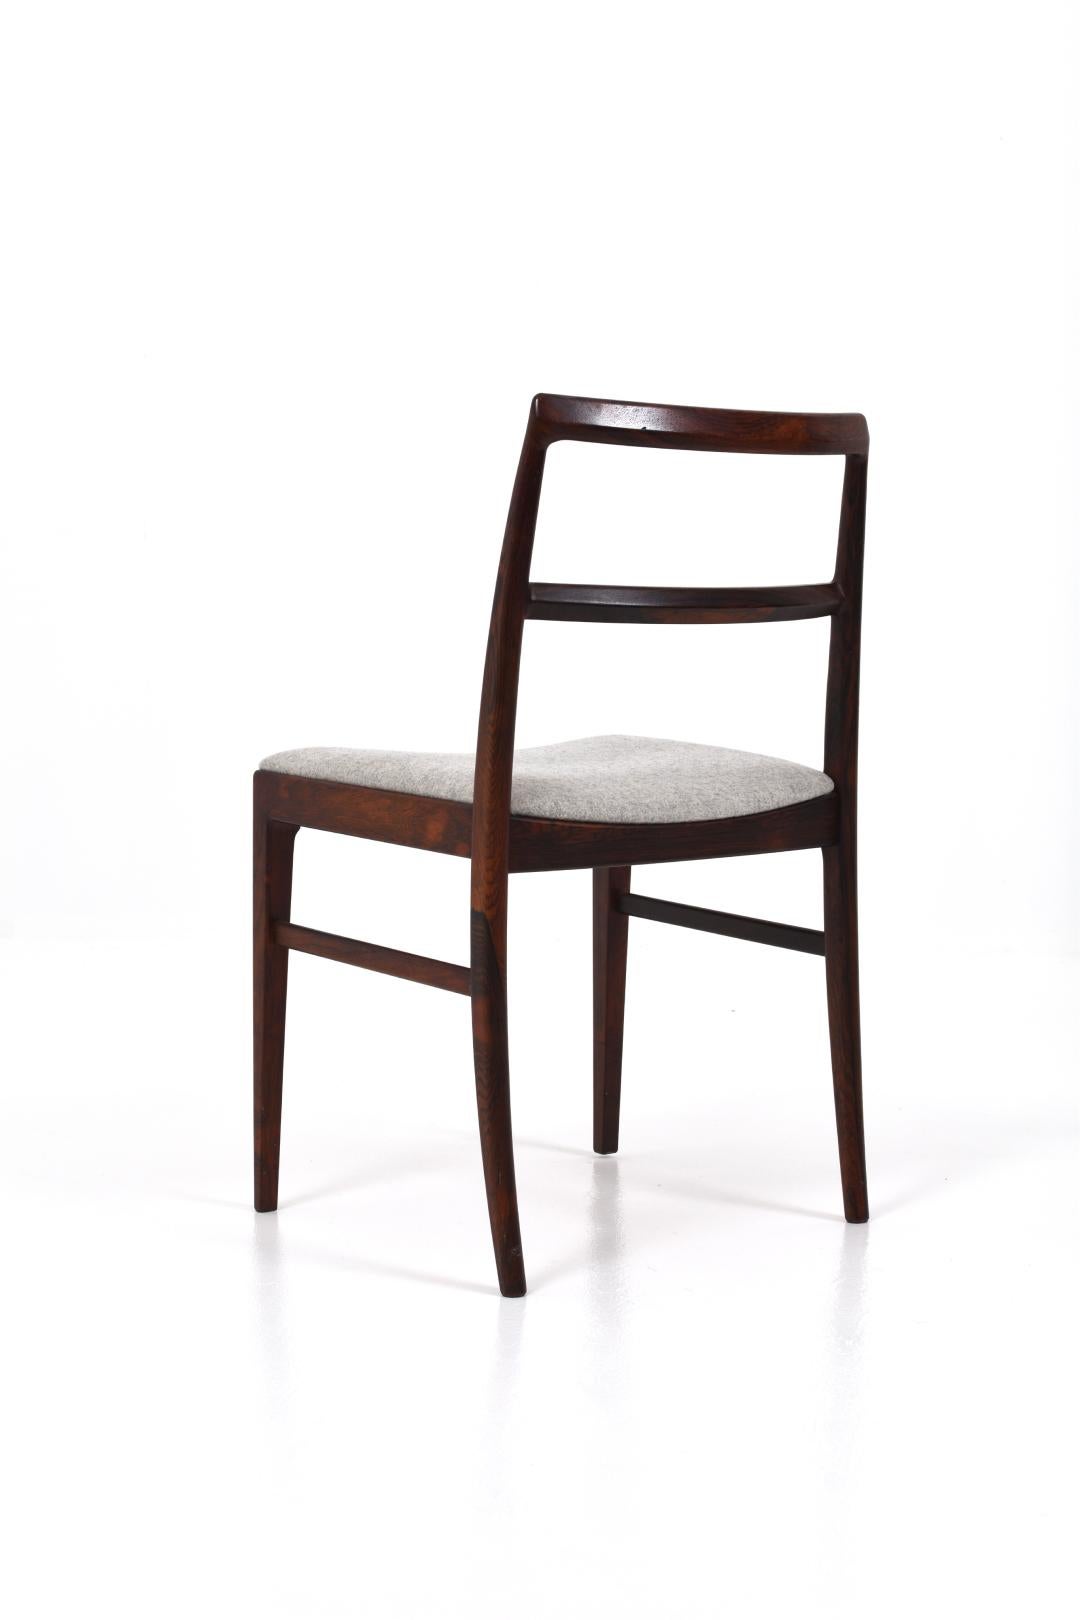 Arne Vodder Model 430 Dining Chairs for Sibast Møbler, set of 4 For Sale 1